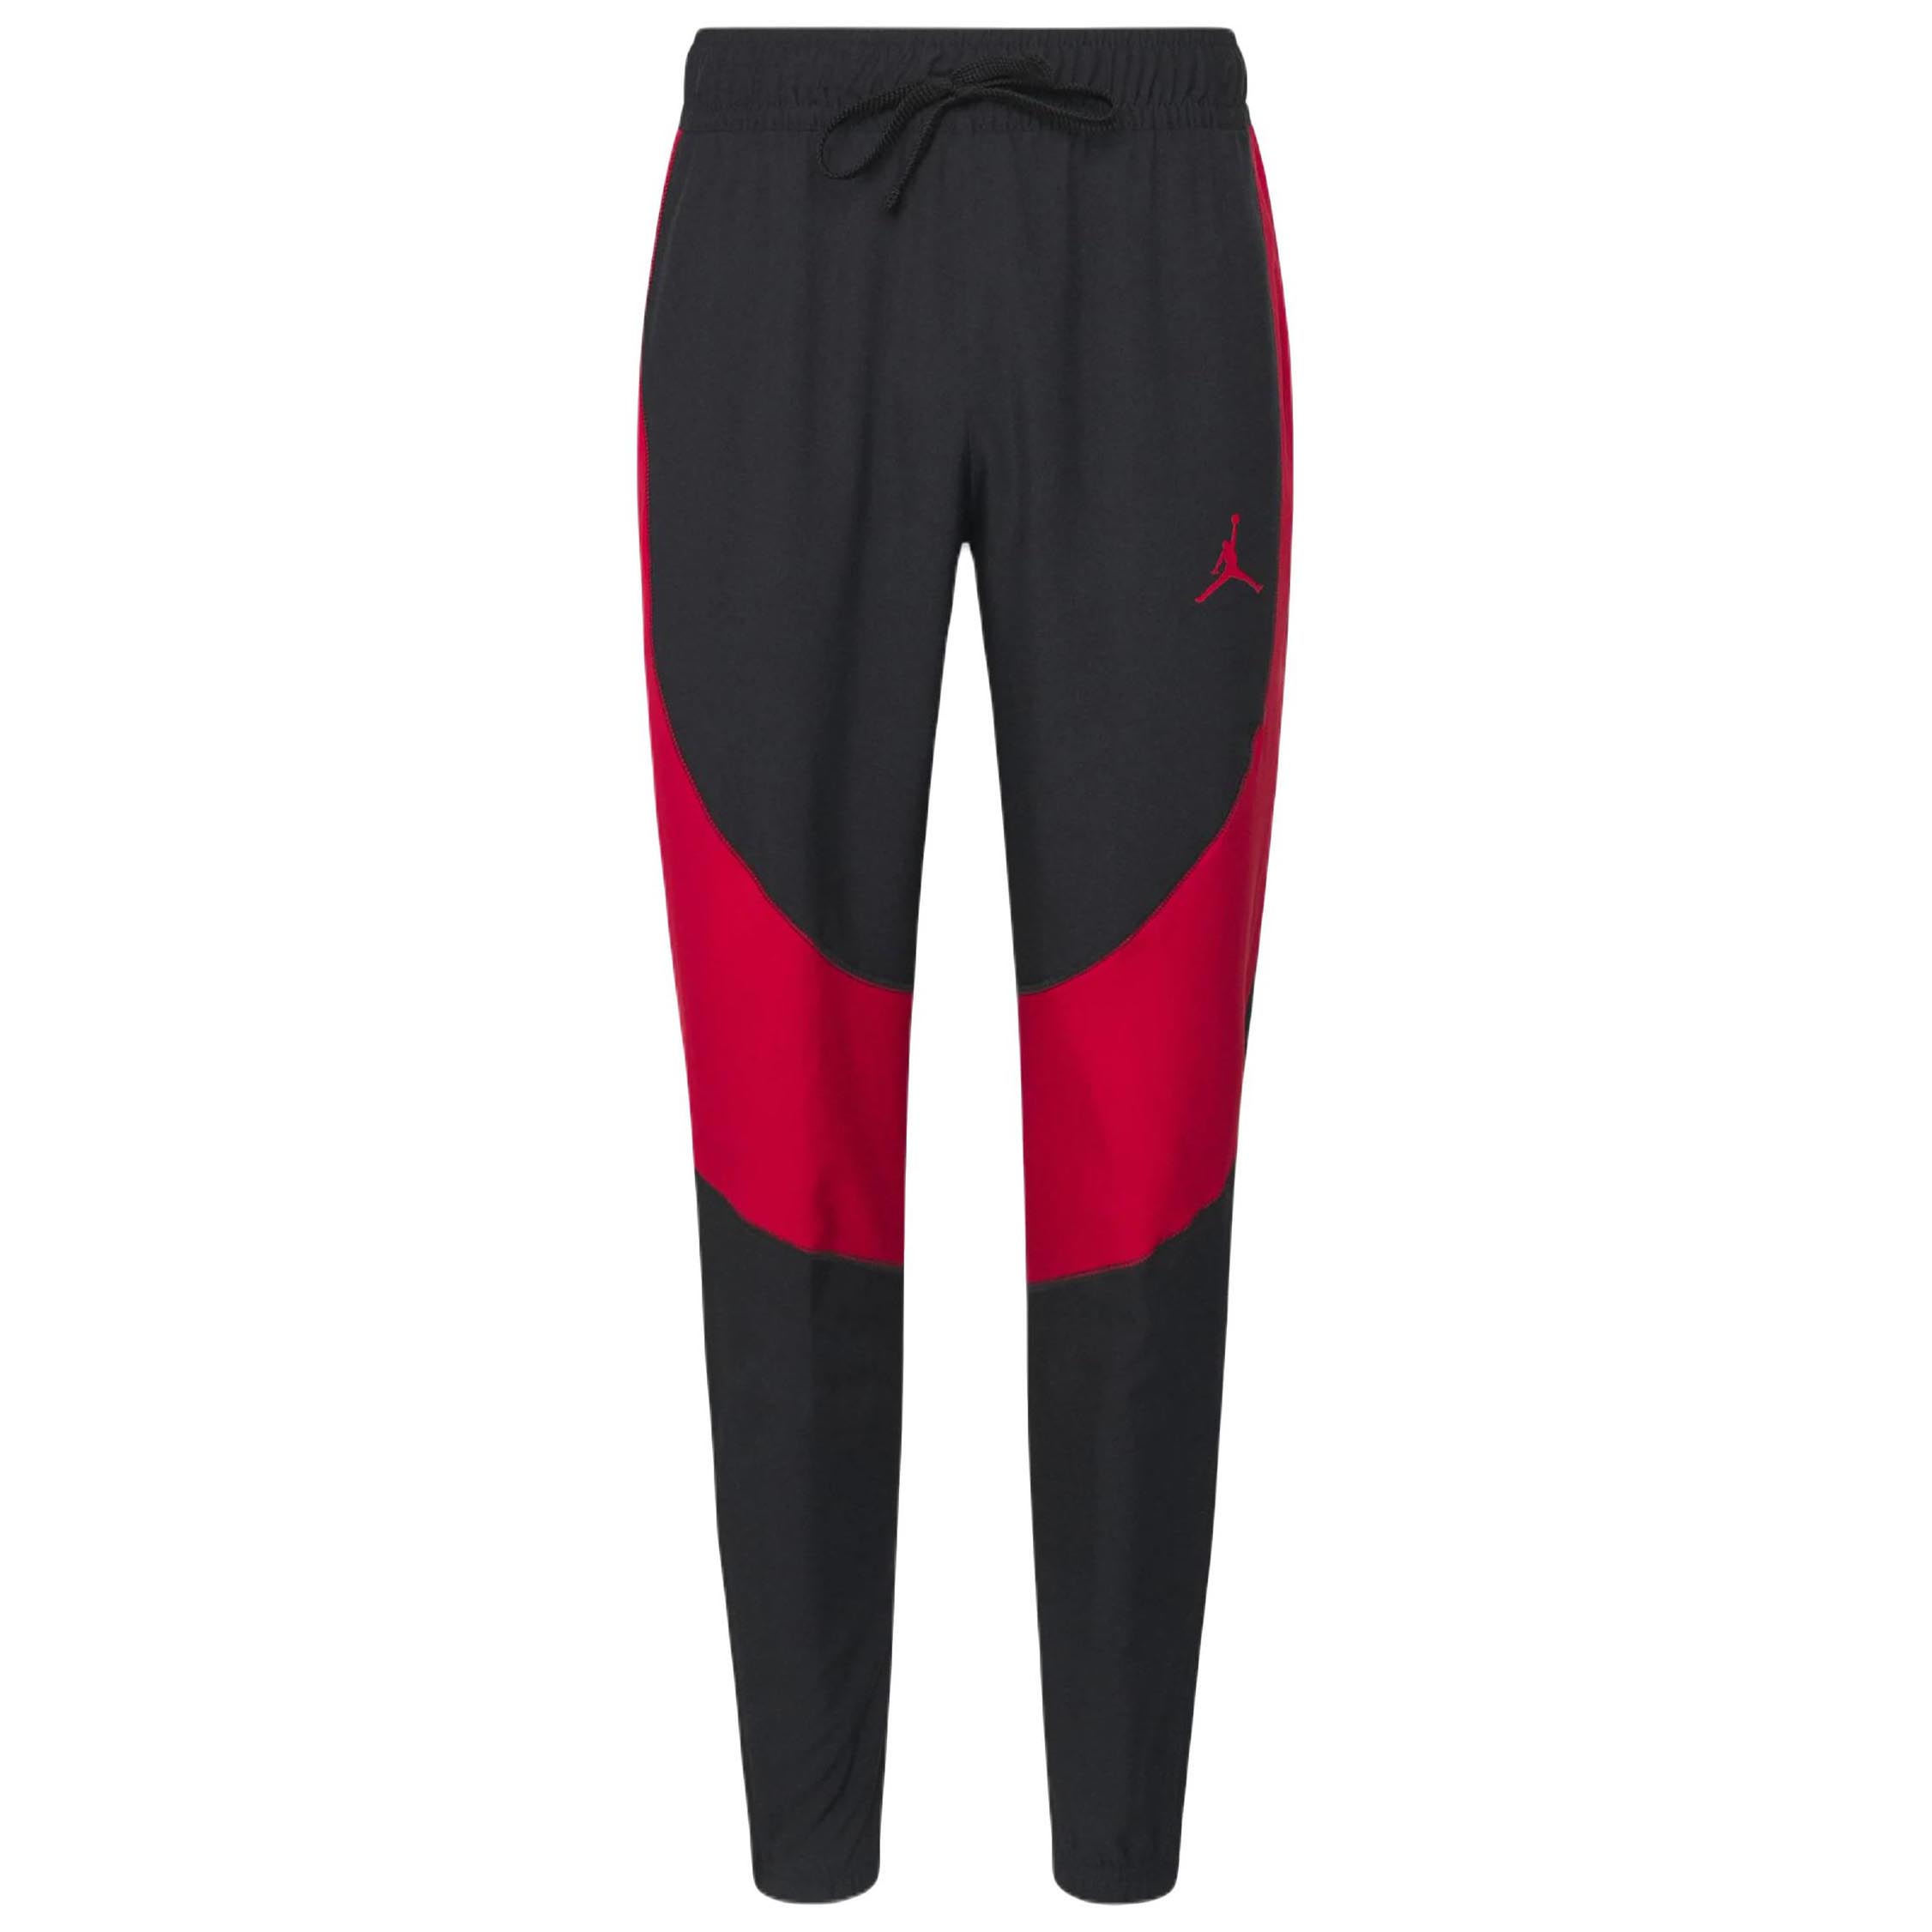 Спортивные брюки Nike Air Jordan Woven, черный/красный спортивные брюки nike air jordan flight pant серый